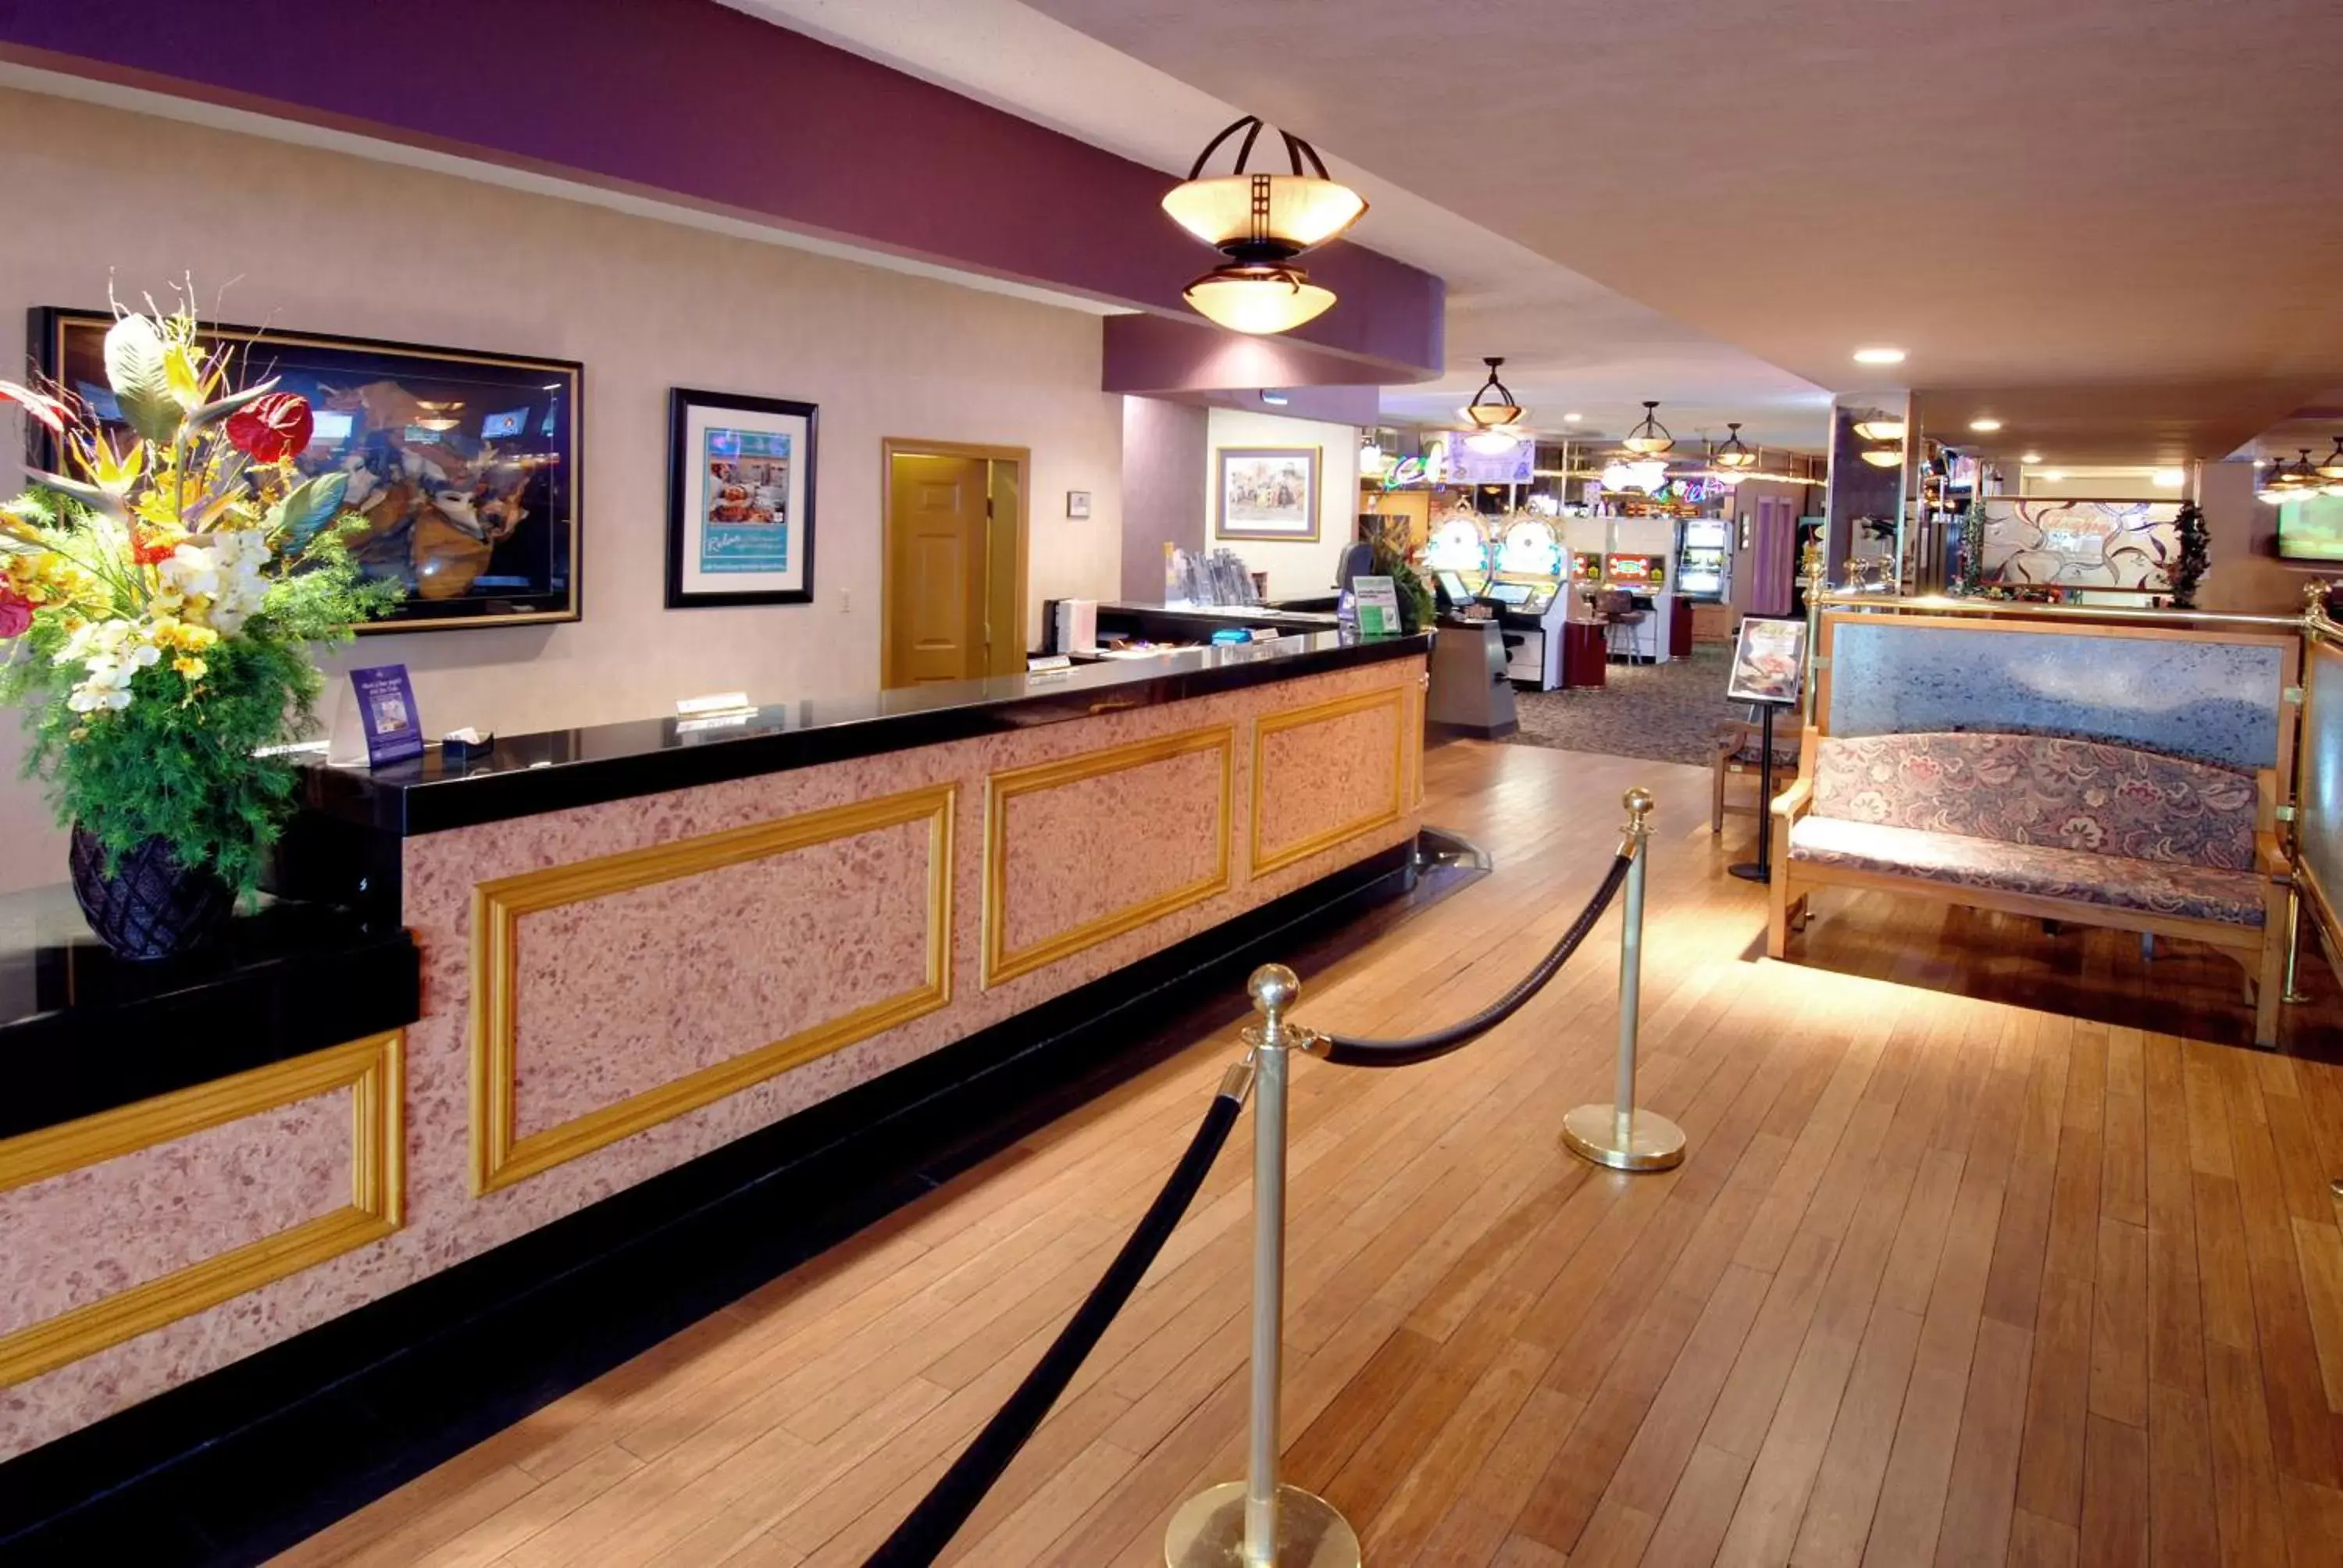 Lobby or reception, Lobby/Reception in Mardi Gras Hotel & Casino